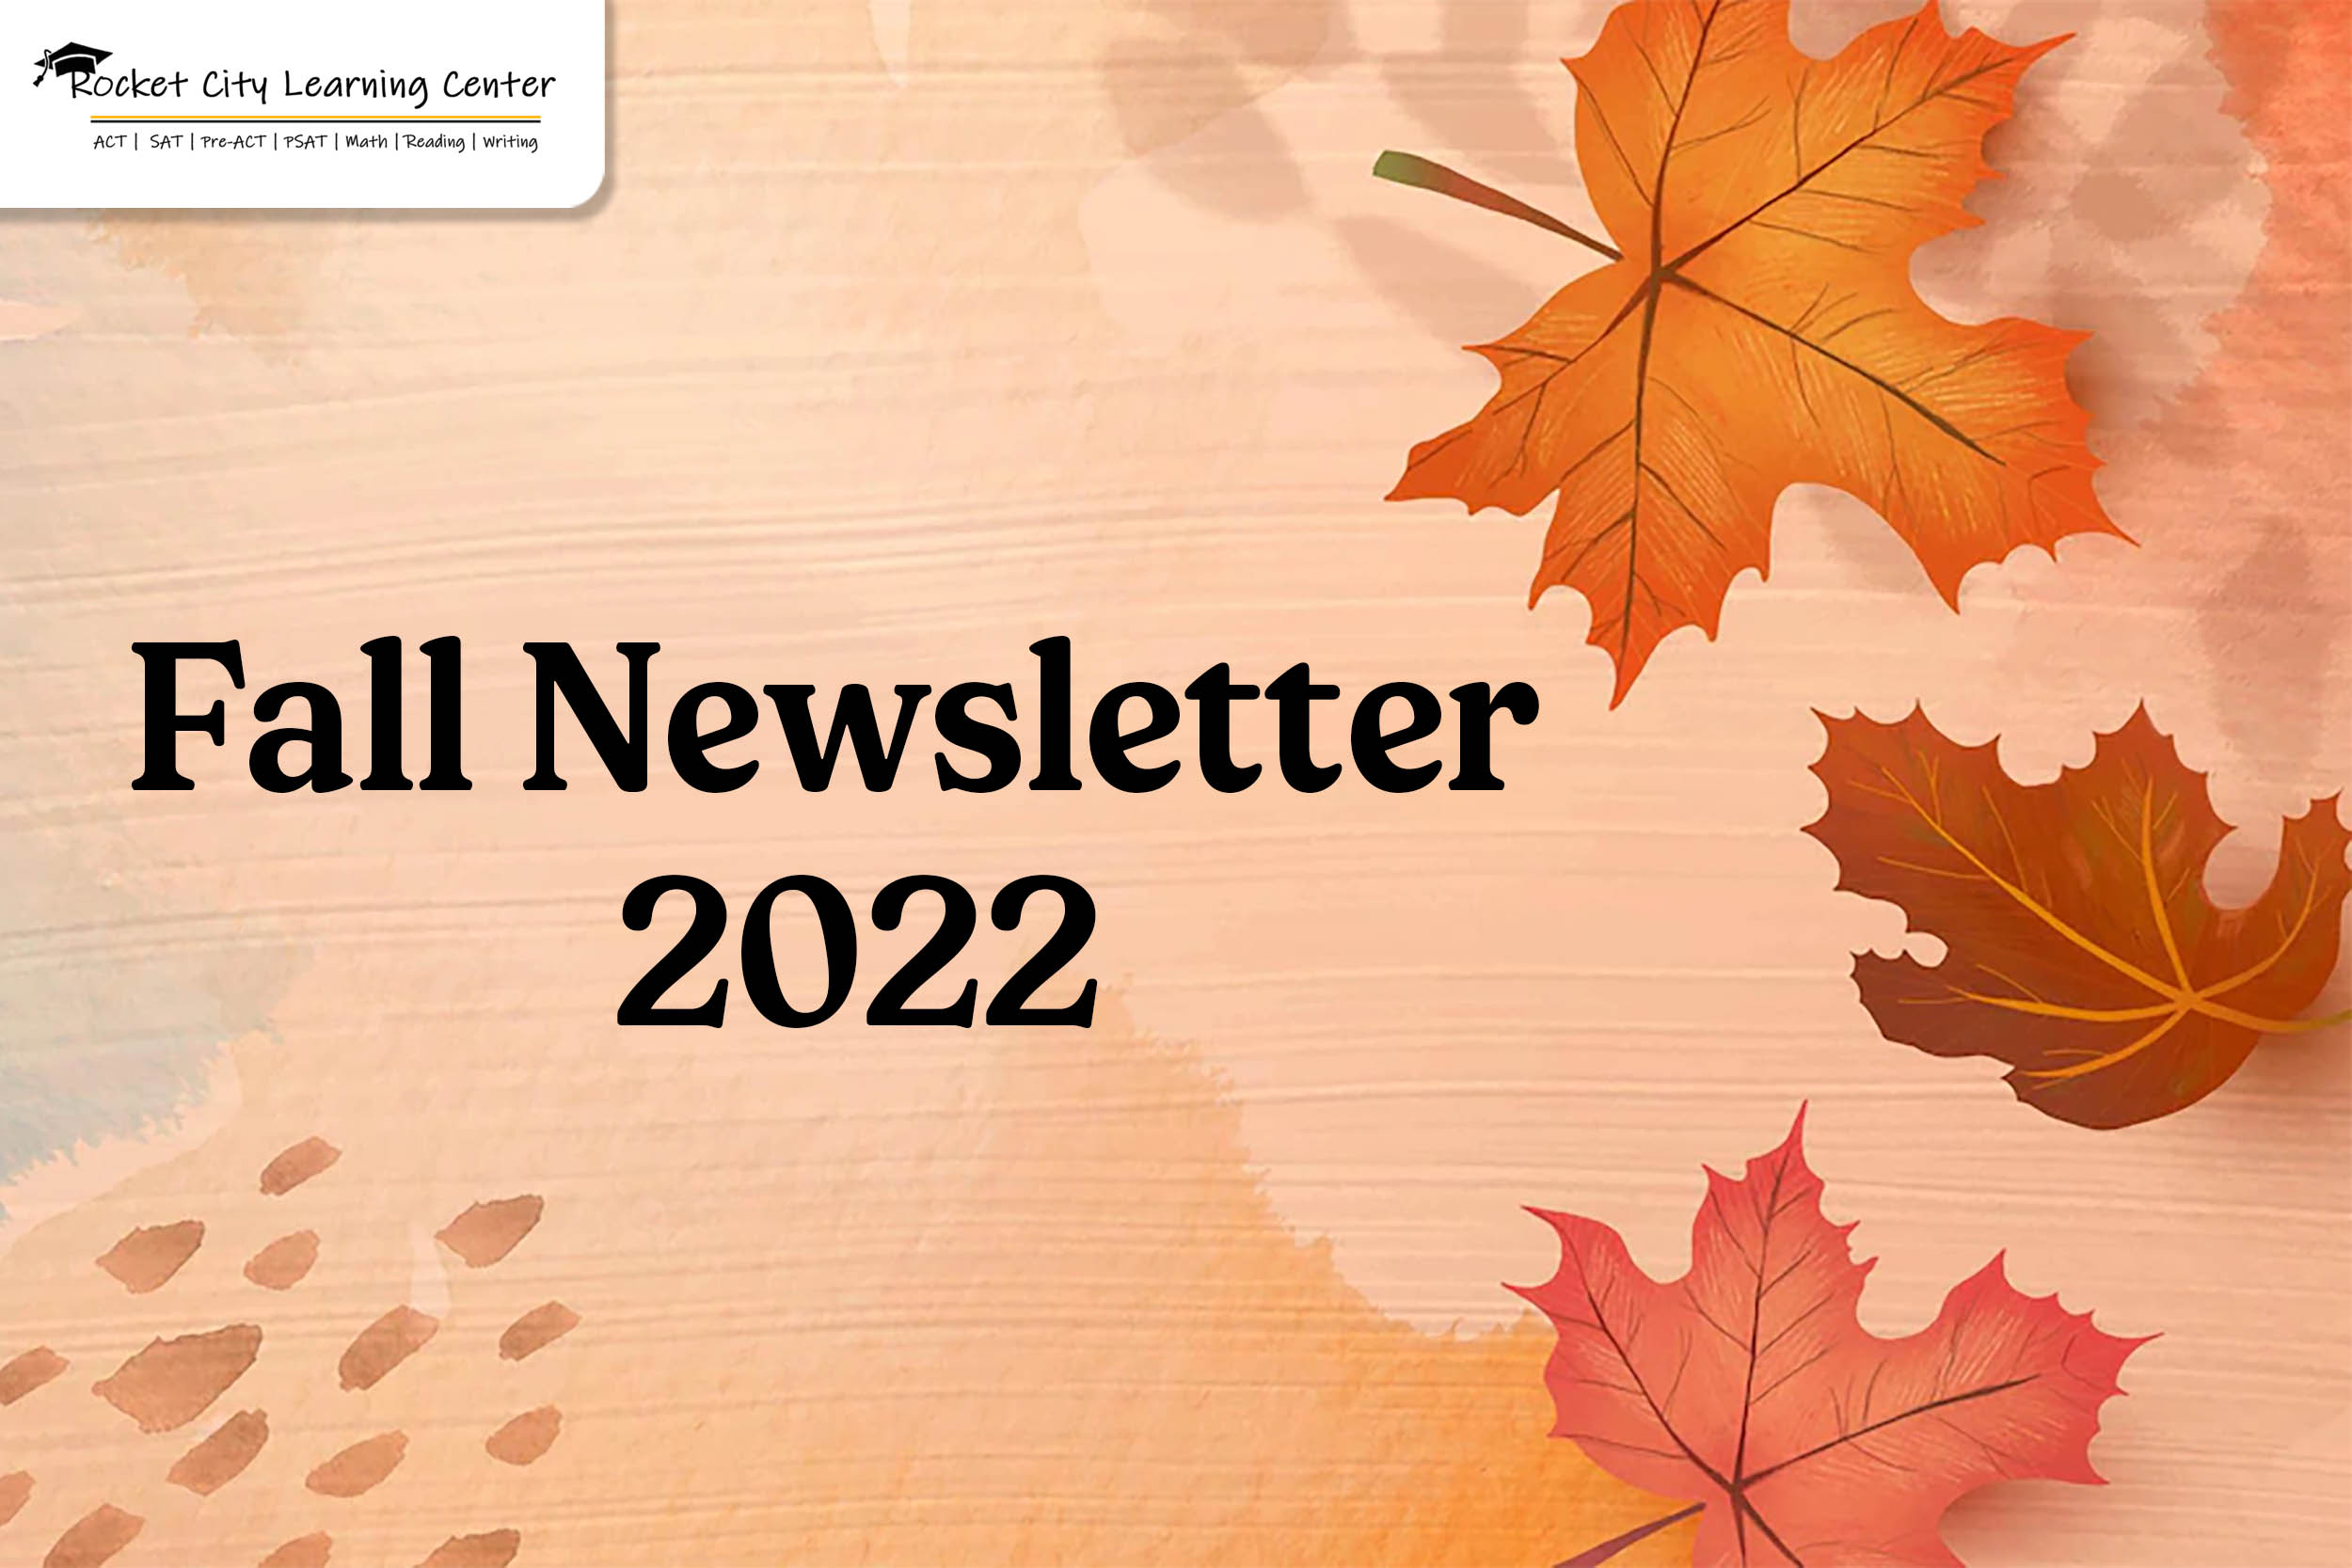 Fall Newsletter 2022